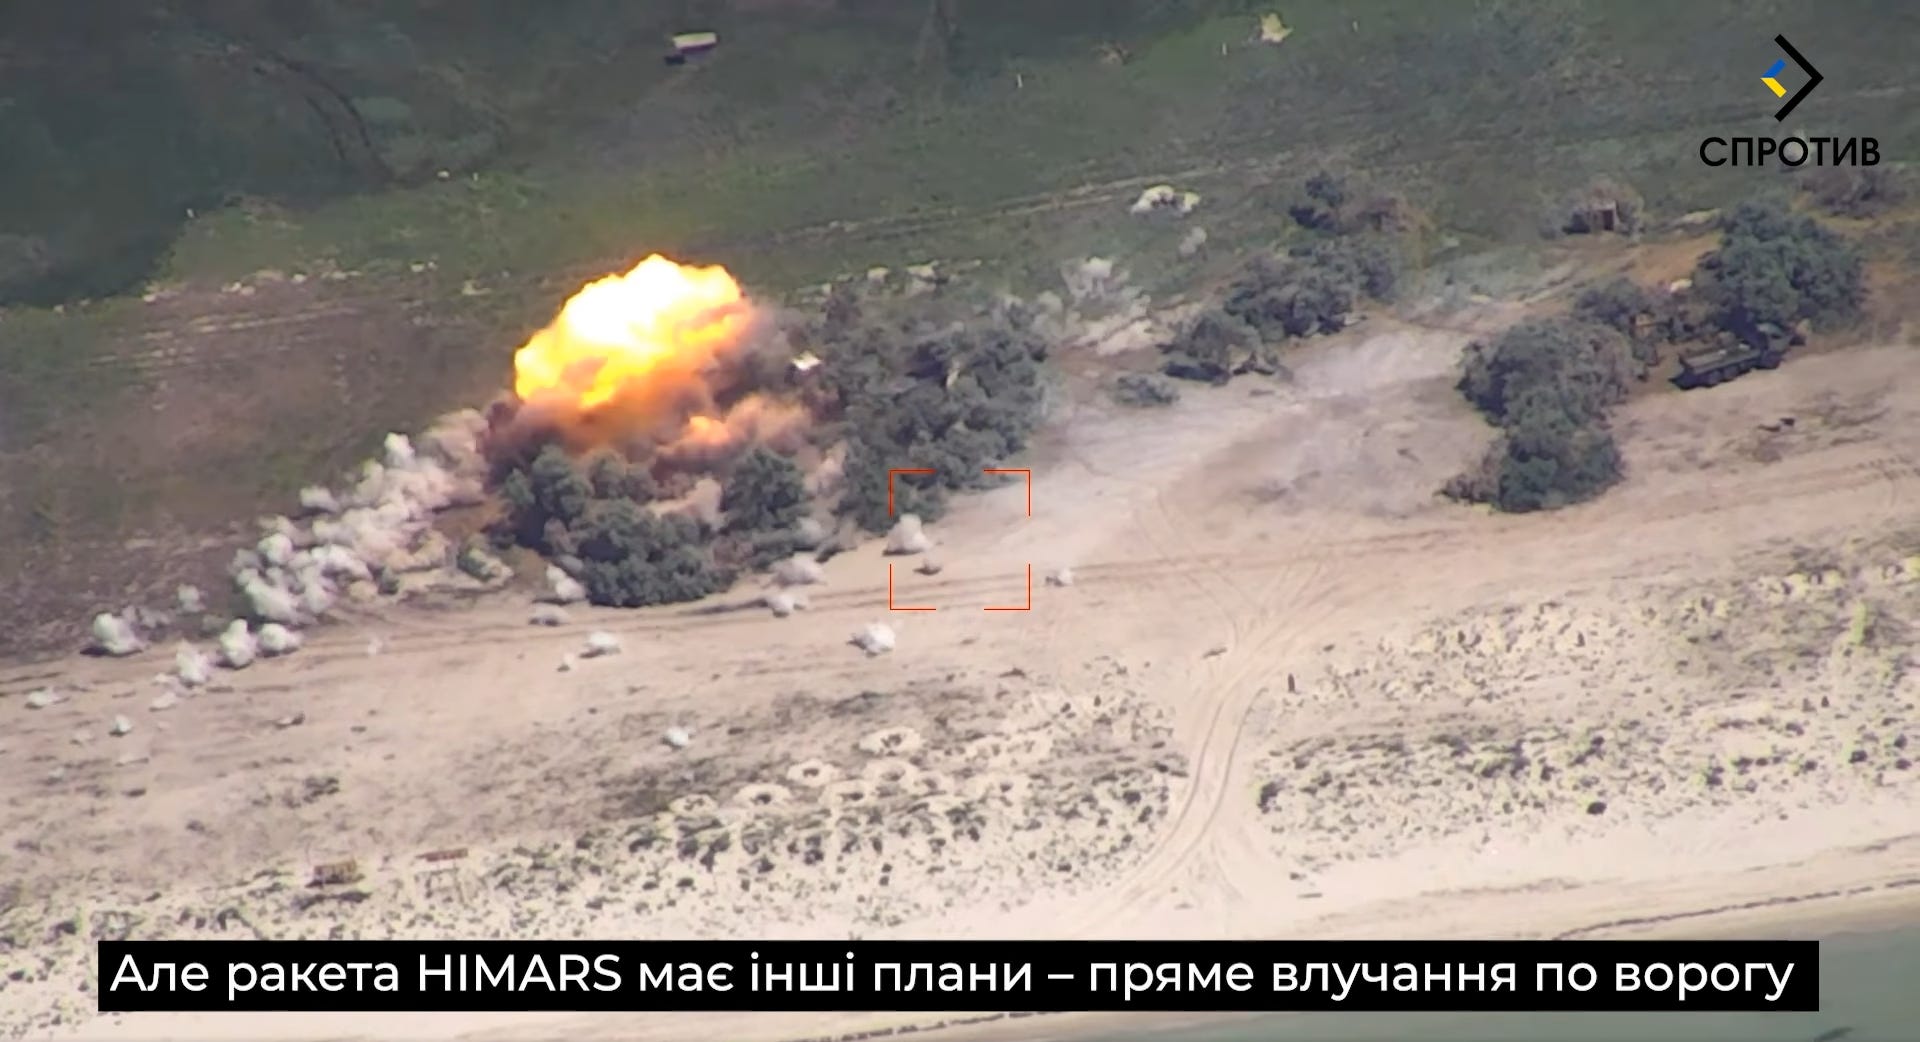 Ein Standbild aus dem Video, das eine Explosion auf einer Sandbank zeigt.